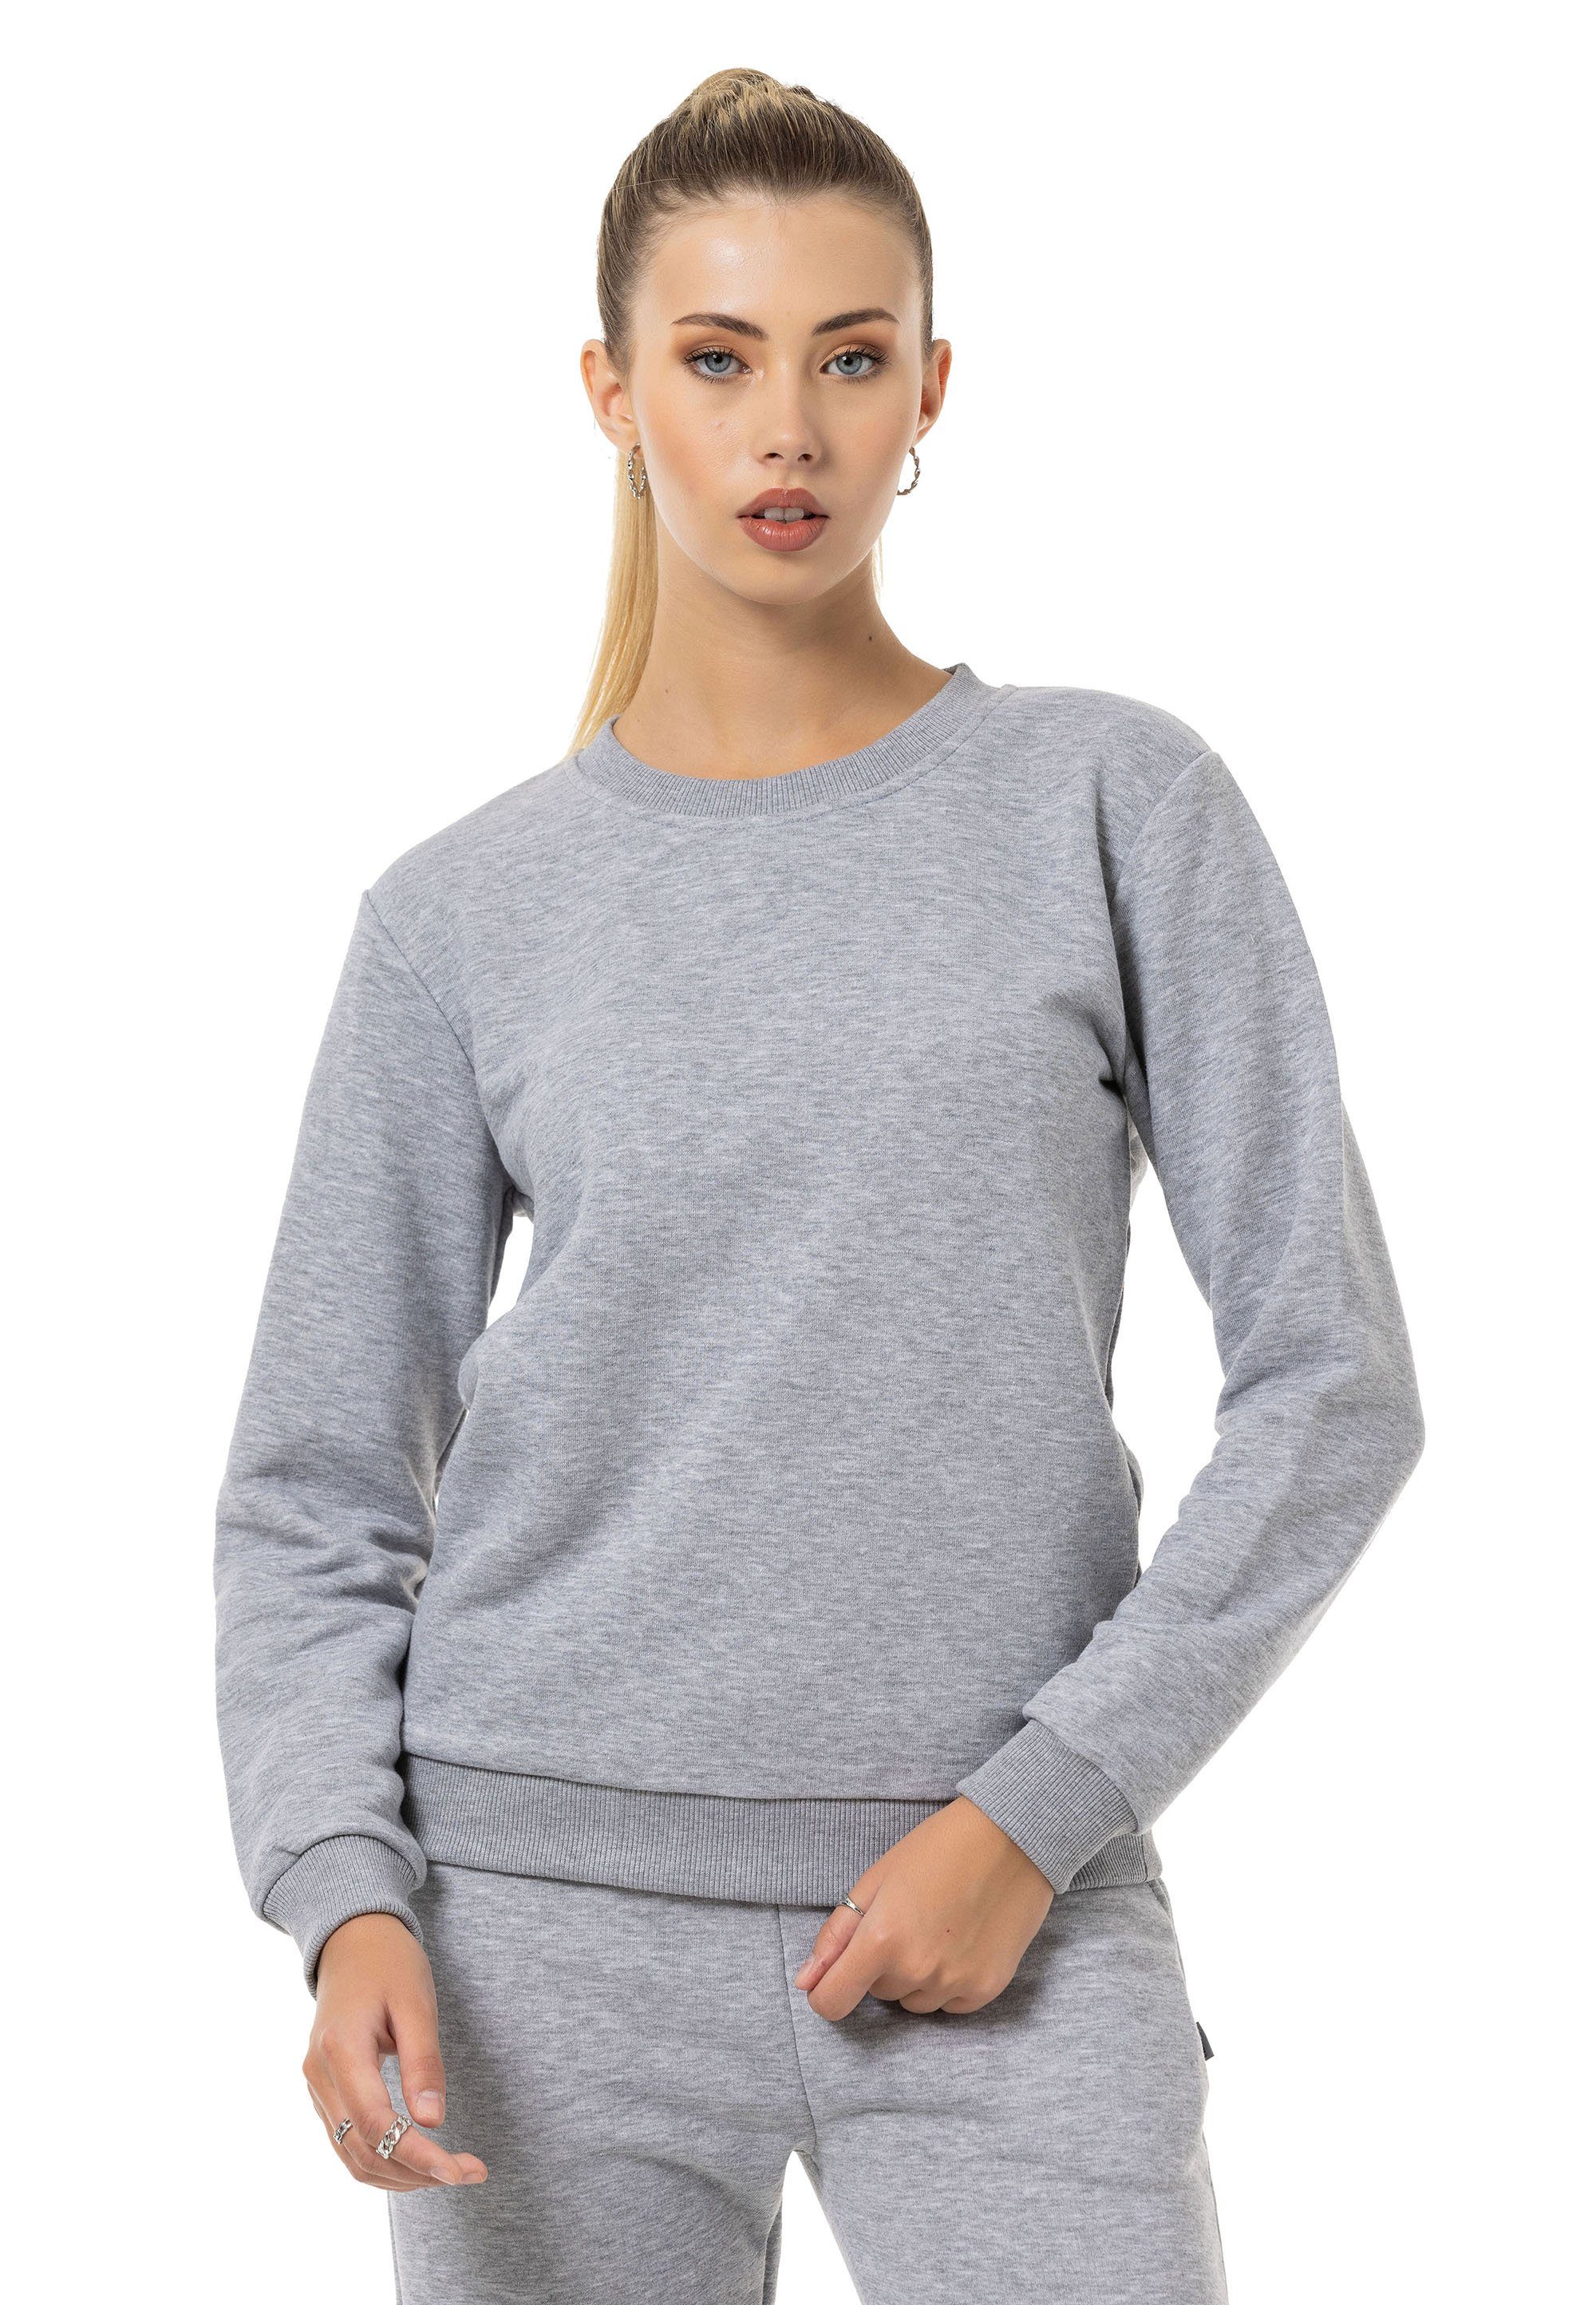 RedBridge Sweatshirt Rundhals Pullover Grau-Melange XXL Premium Qualität